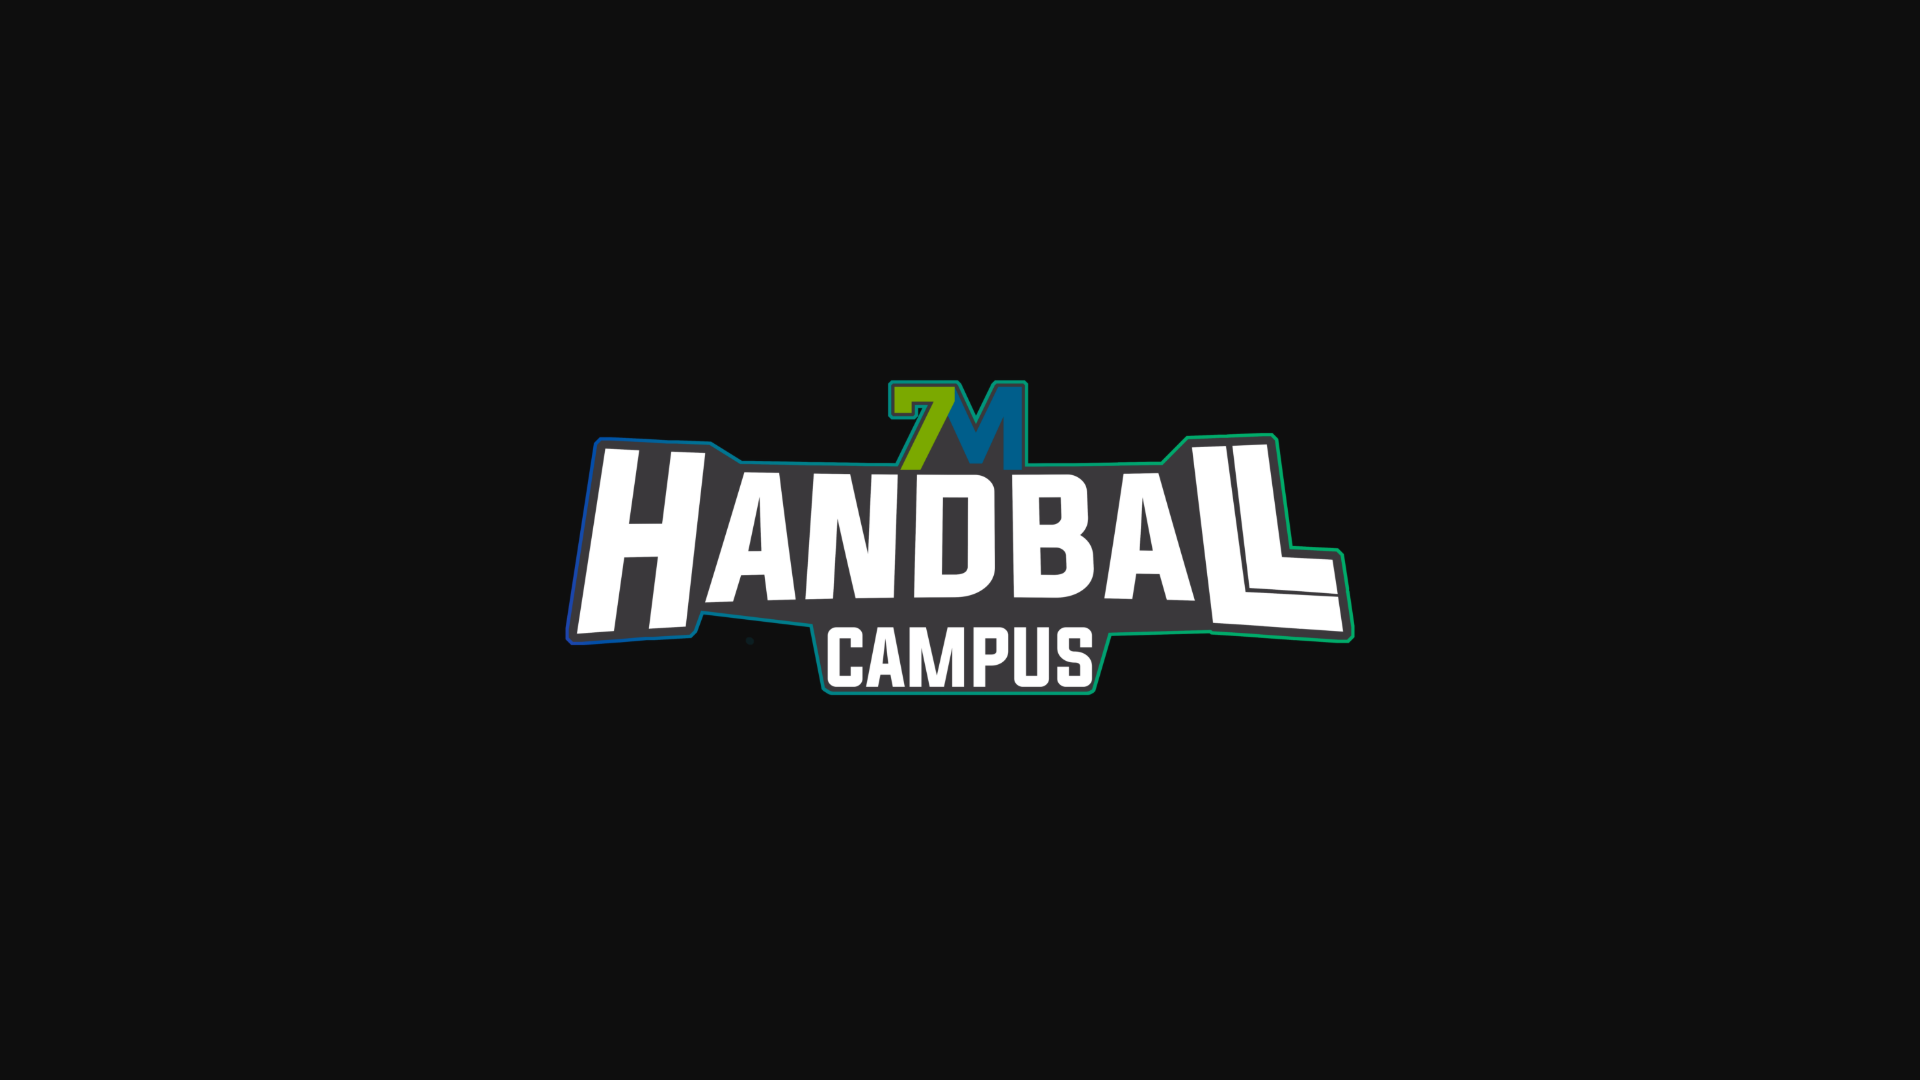 7M Handball Campus